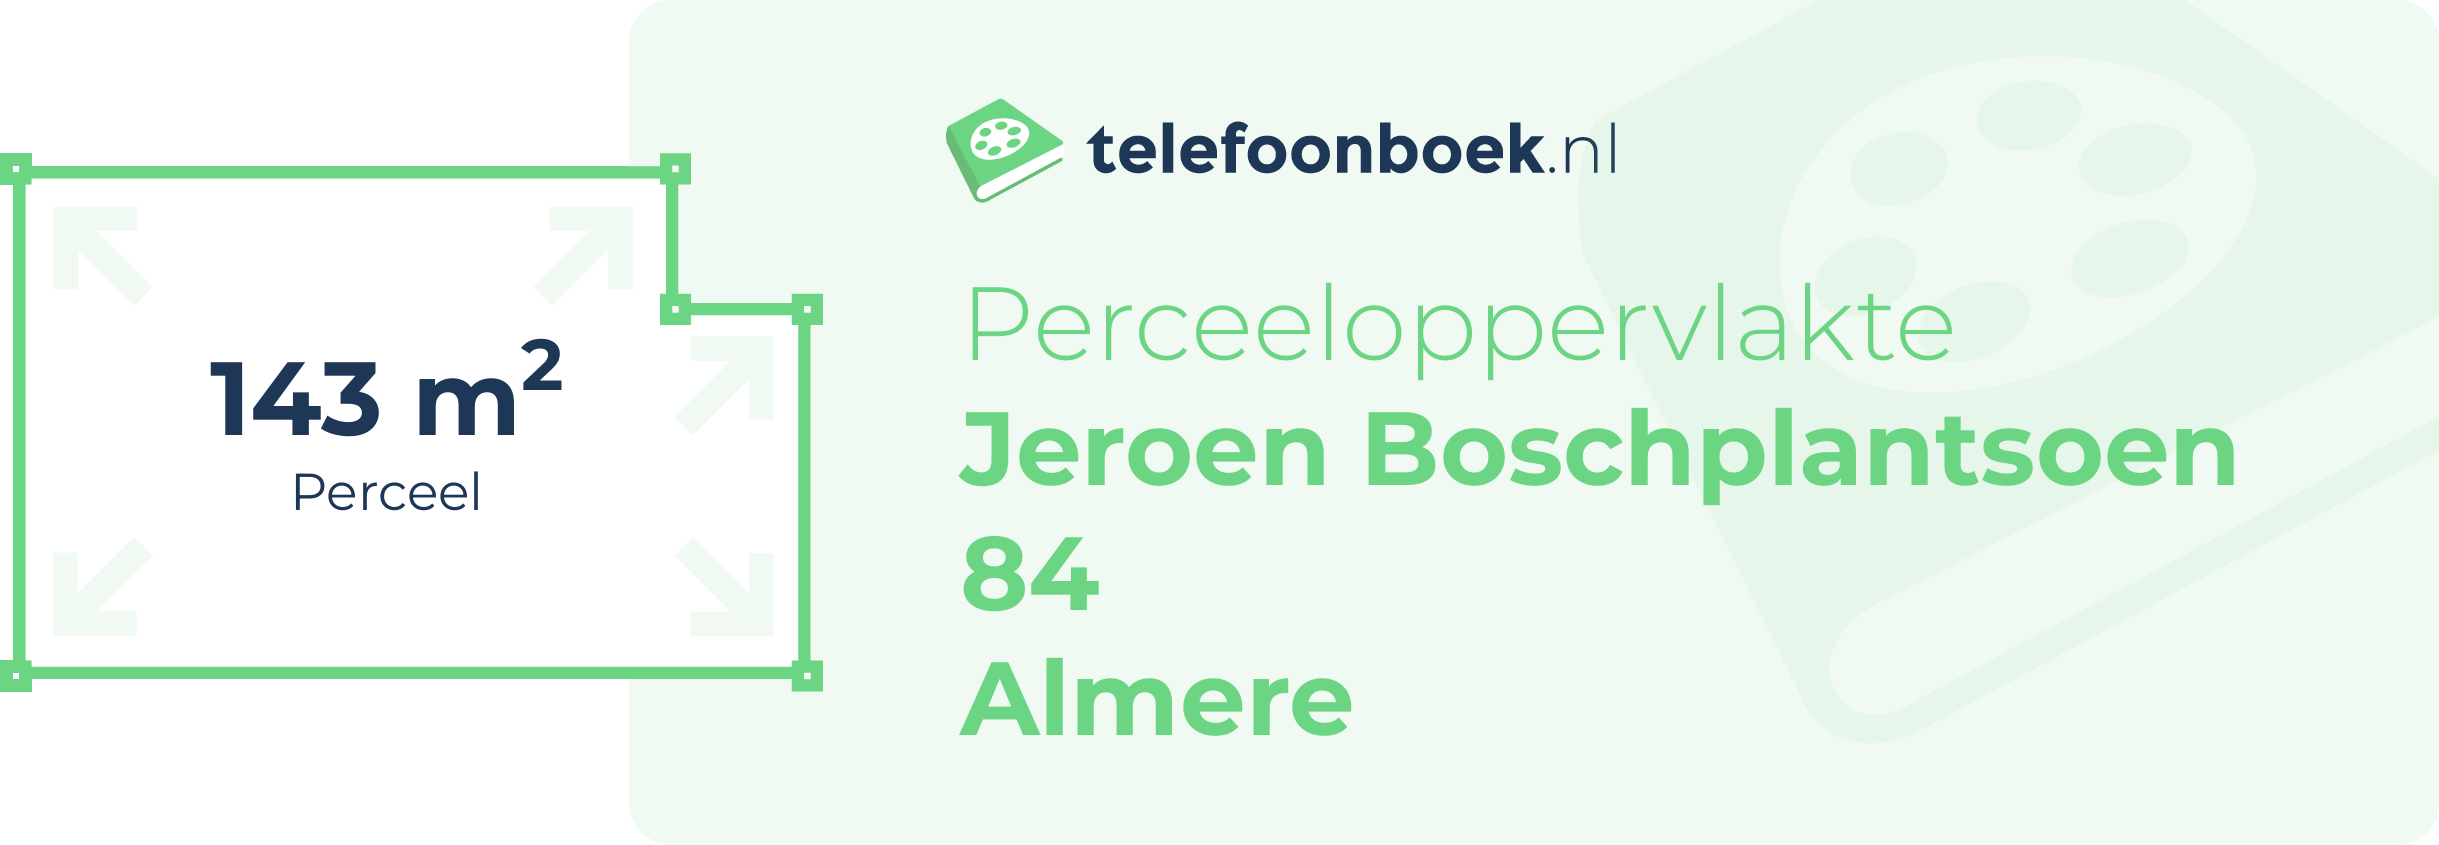 Perceeloppervlakte Jeroen Boschplantsoen 84 Almere